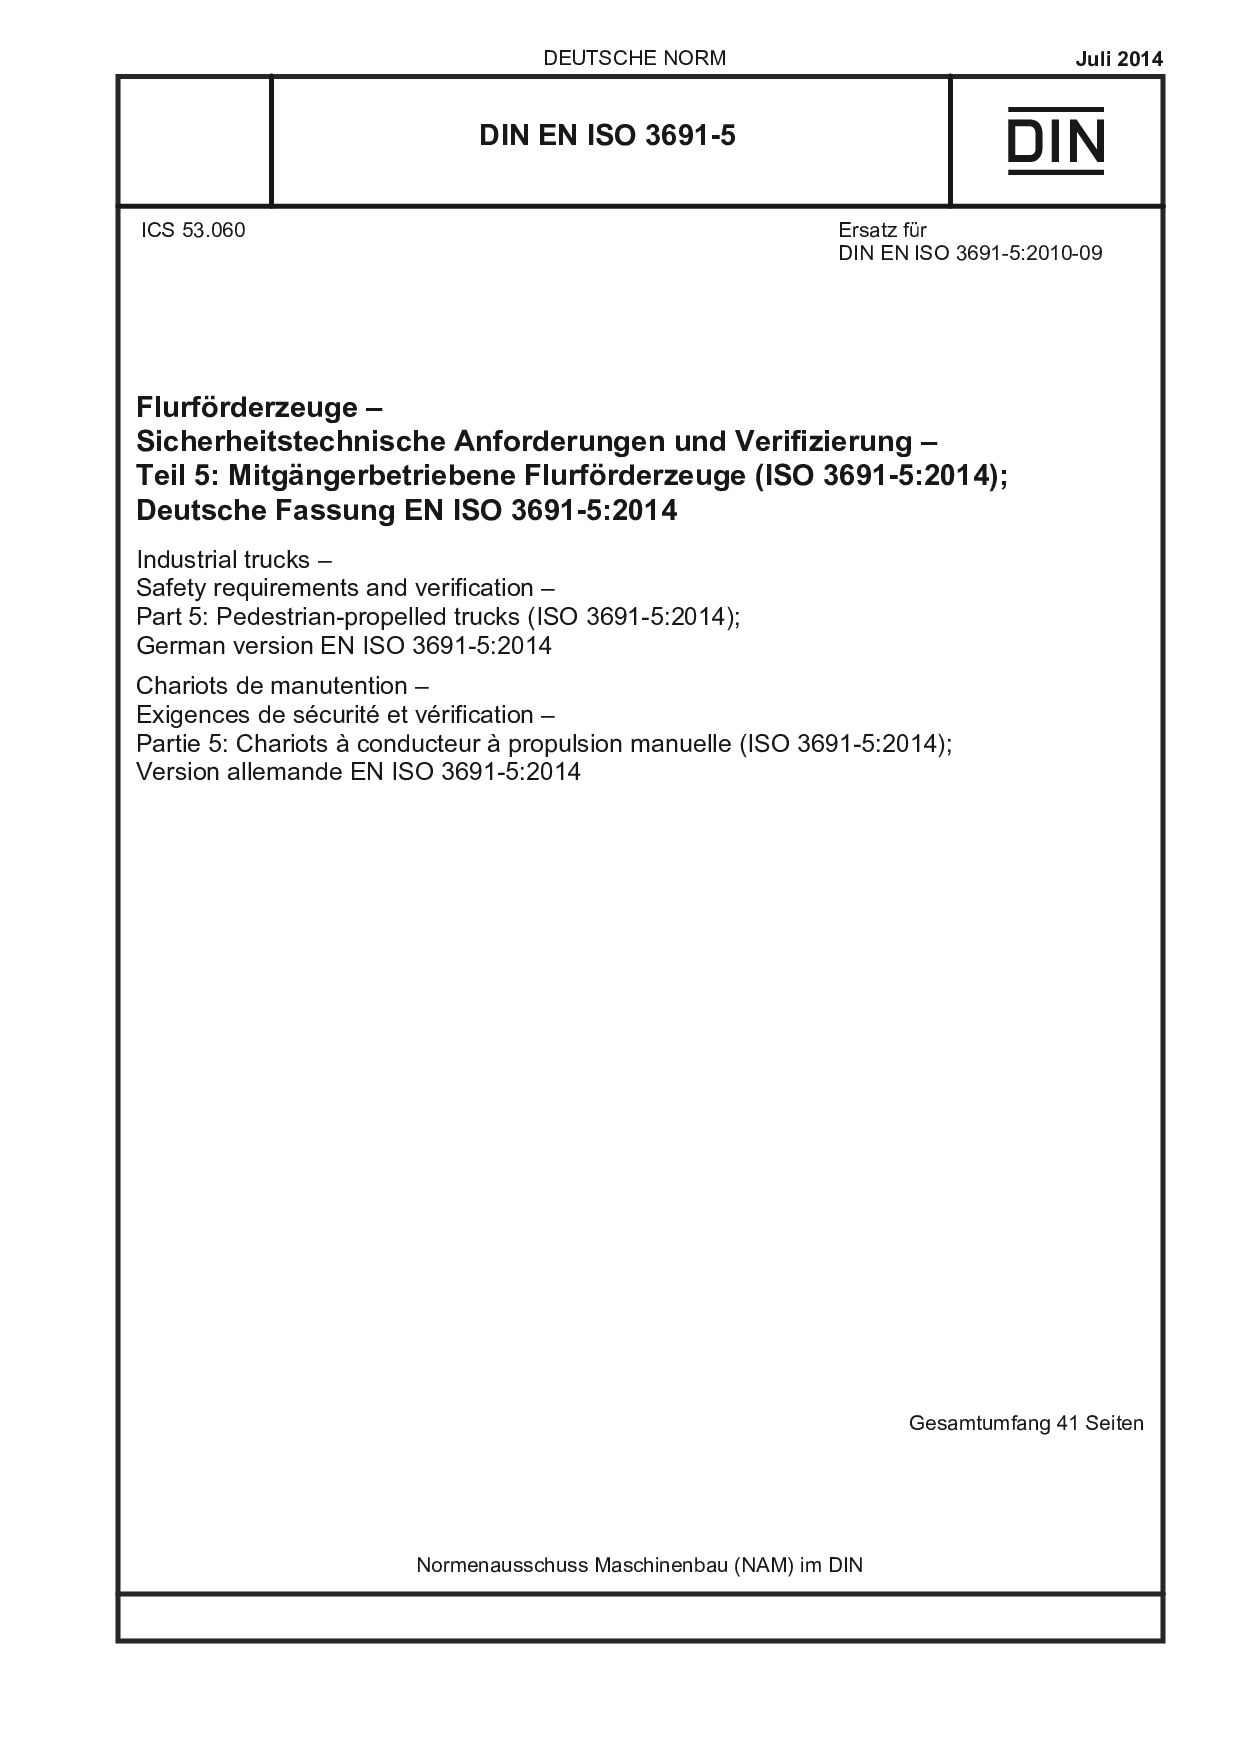 DIN EN ISO 3691-5:2014